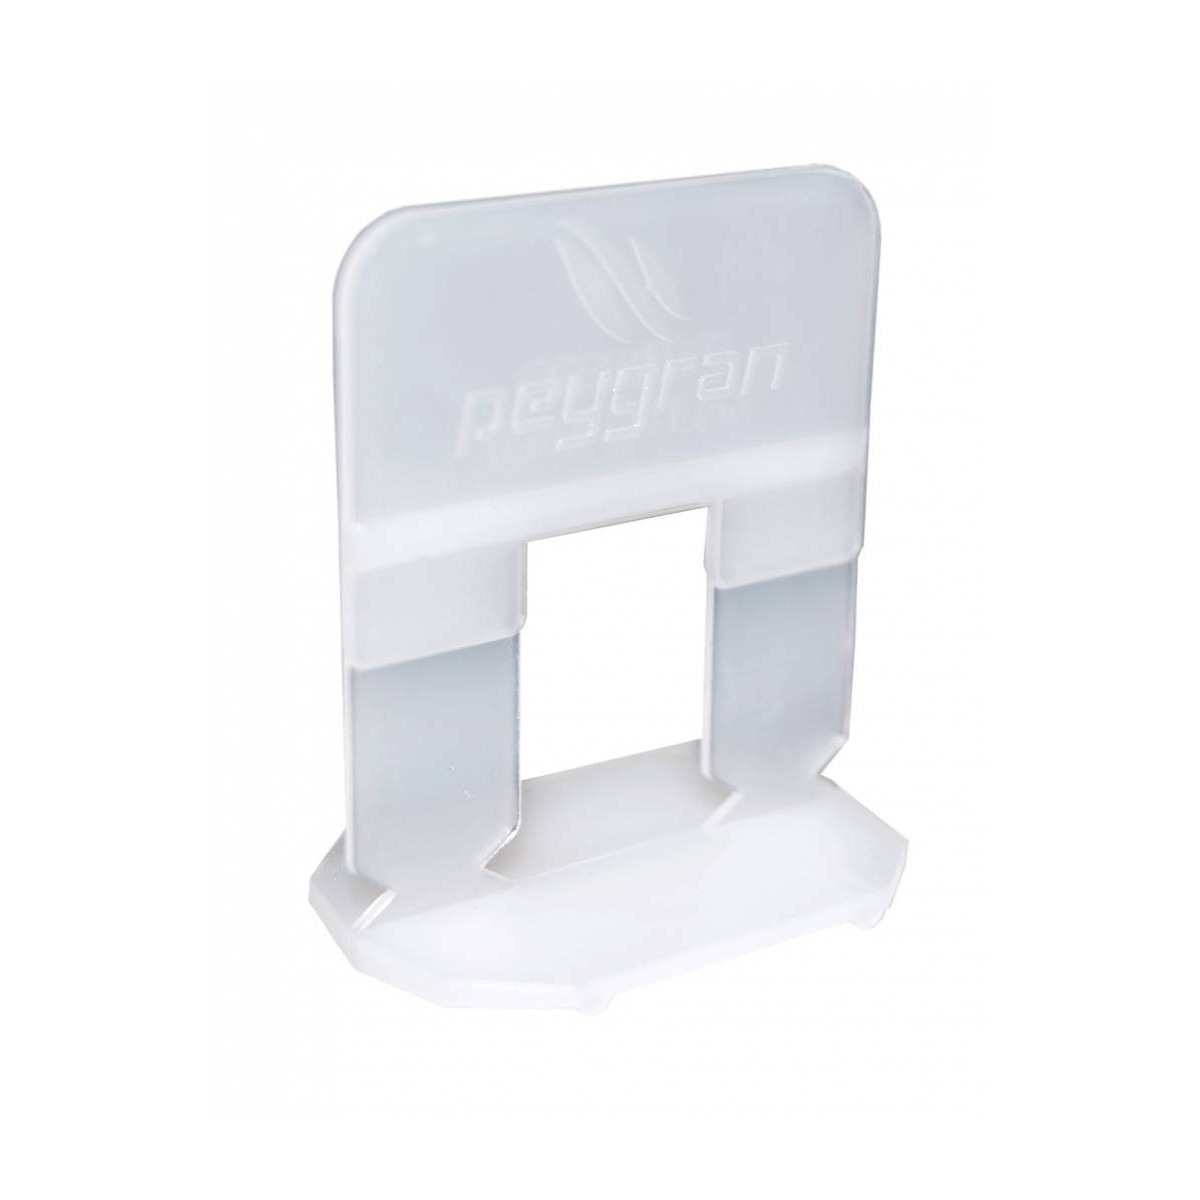 Calço de 1 mm Peygran (saco de 300 unidades) - Peygran